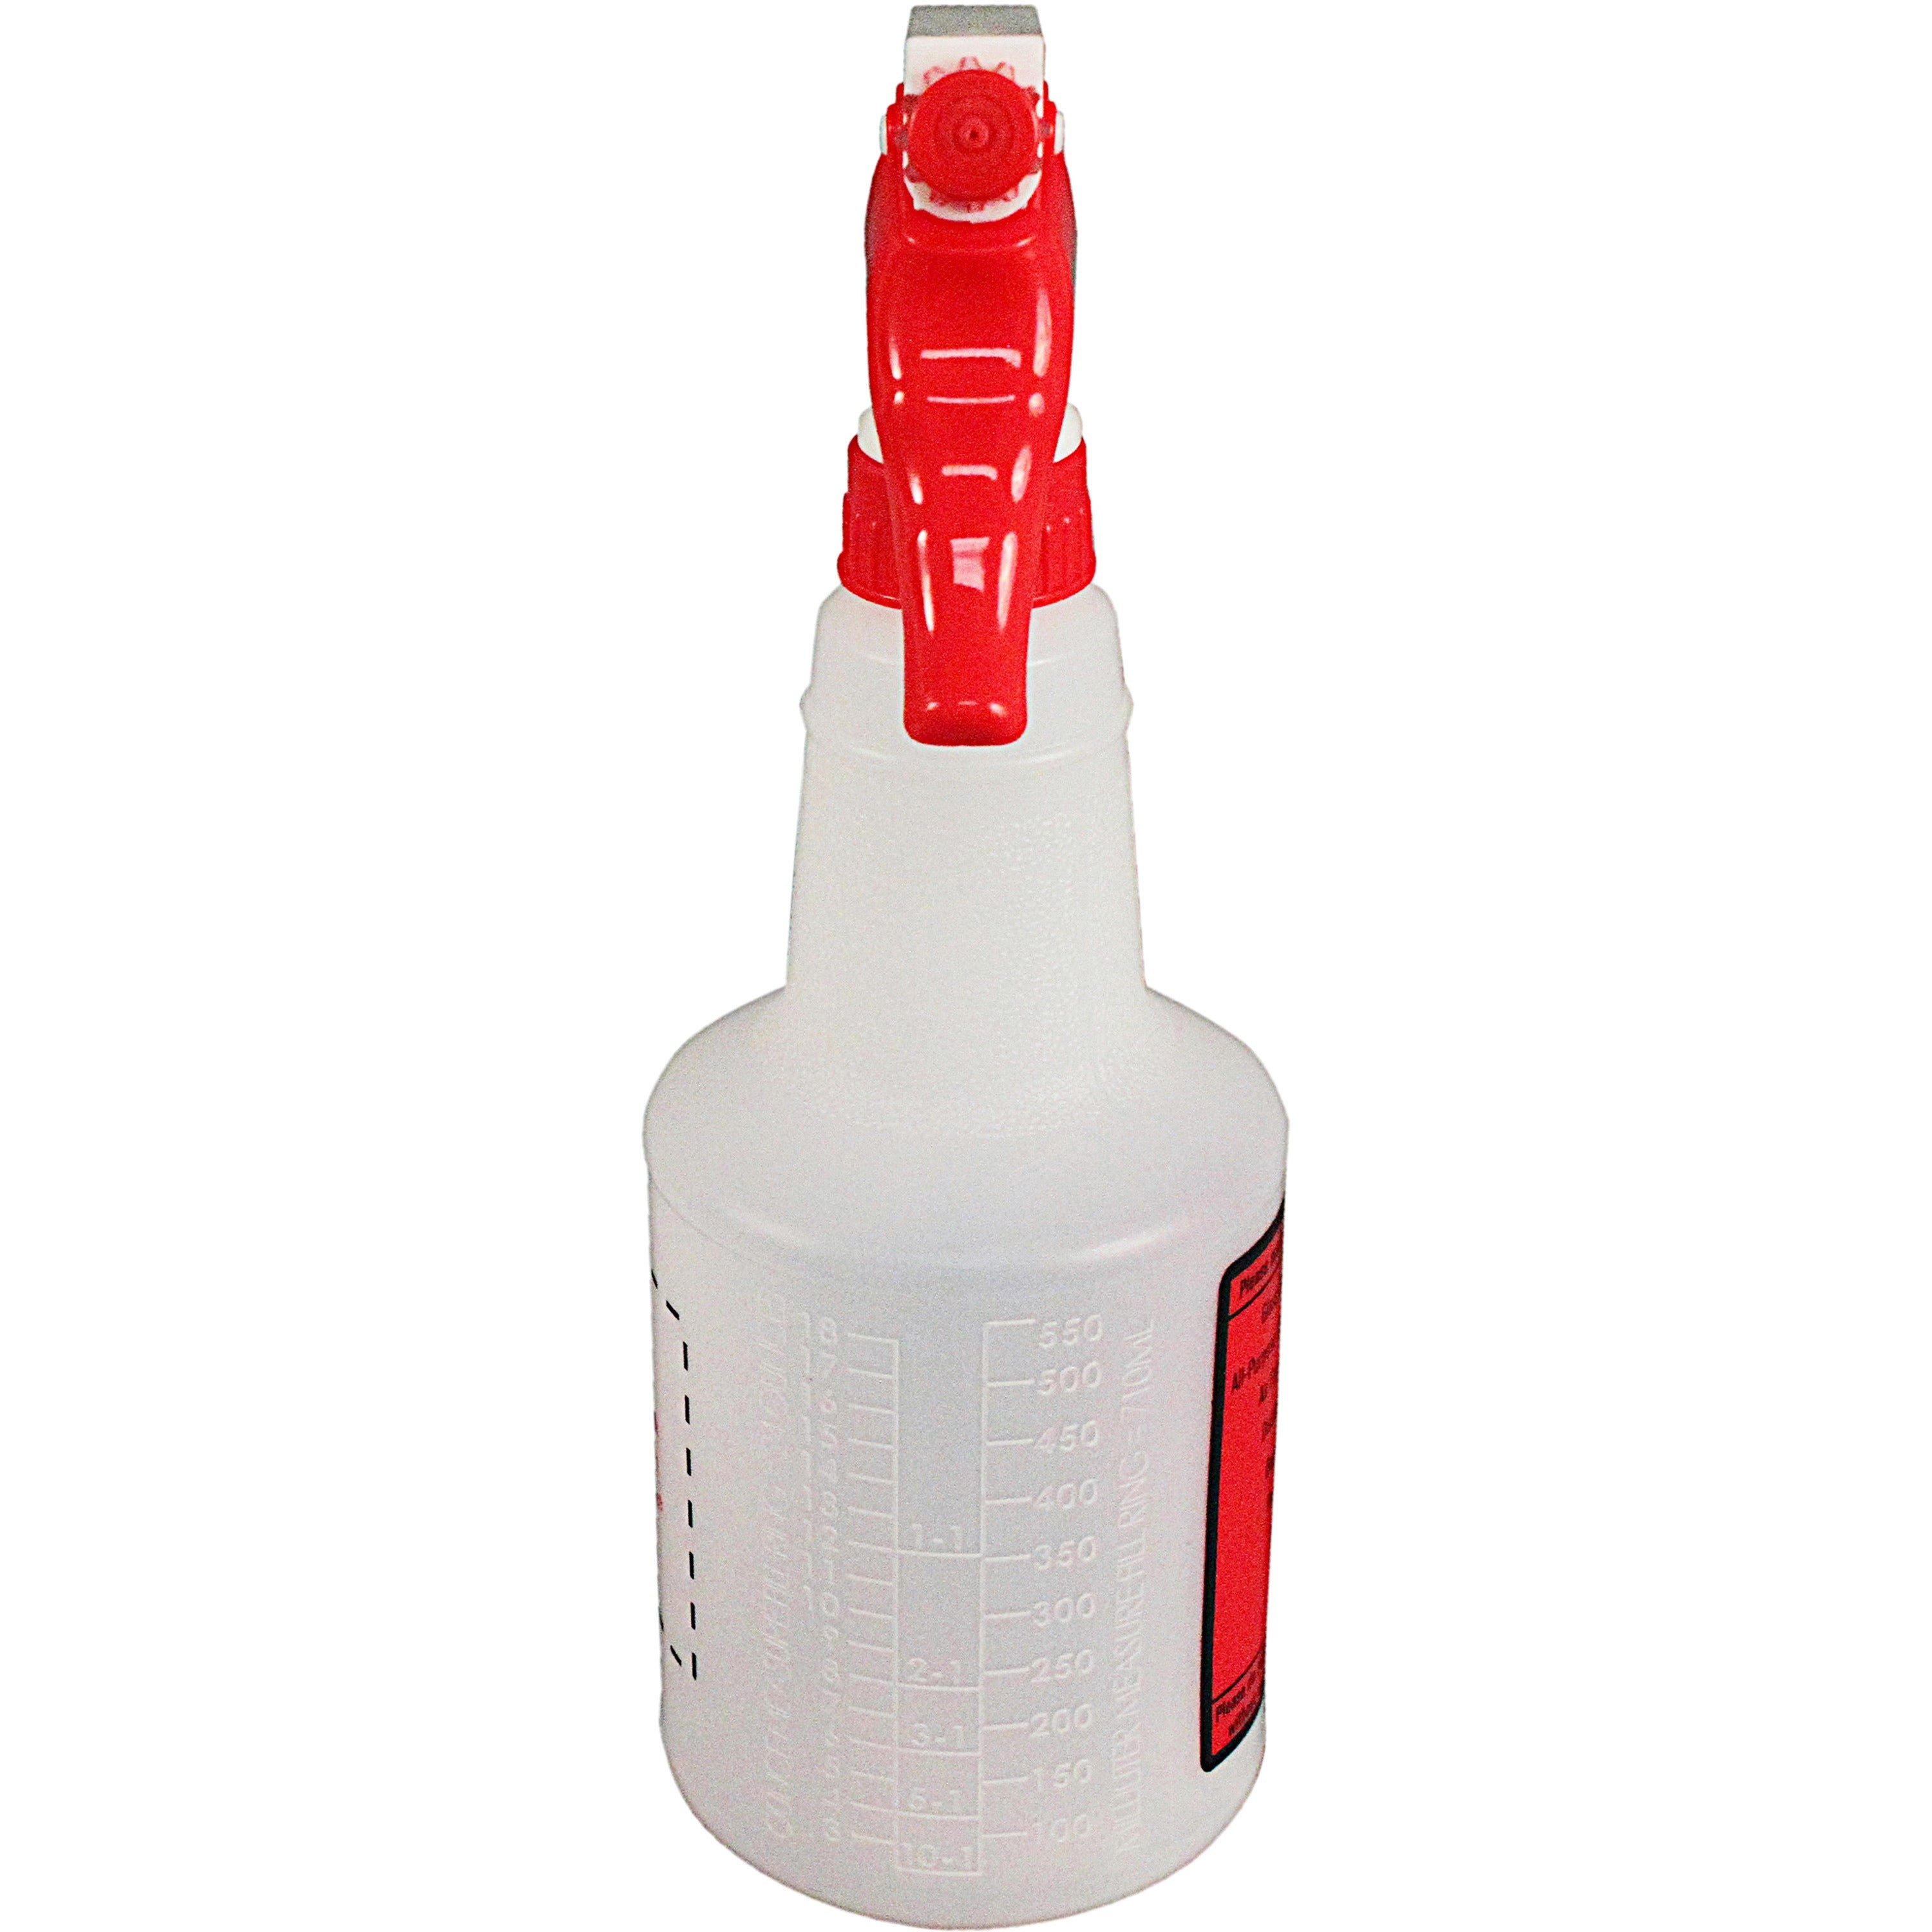 spray-alert-spray-bottle-leak-proof-106-height-45-width-32-carton-white_imp5024ssct - 2